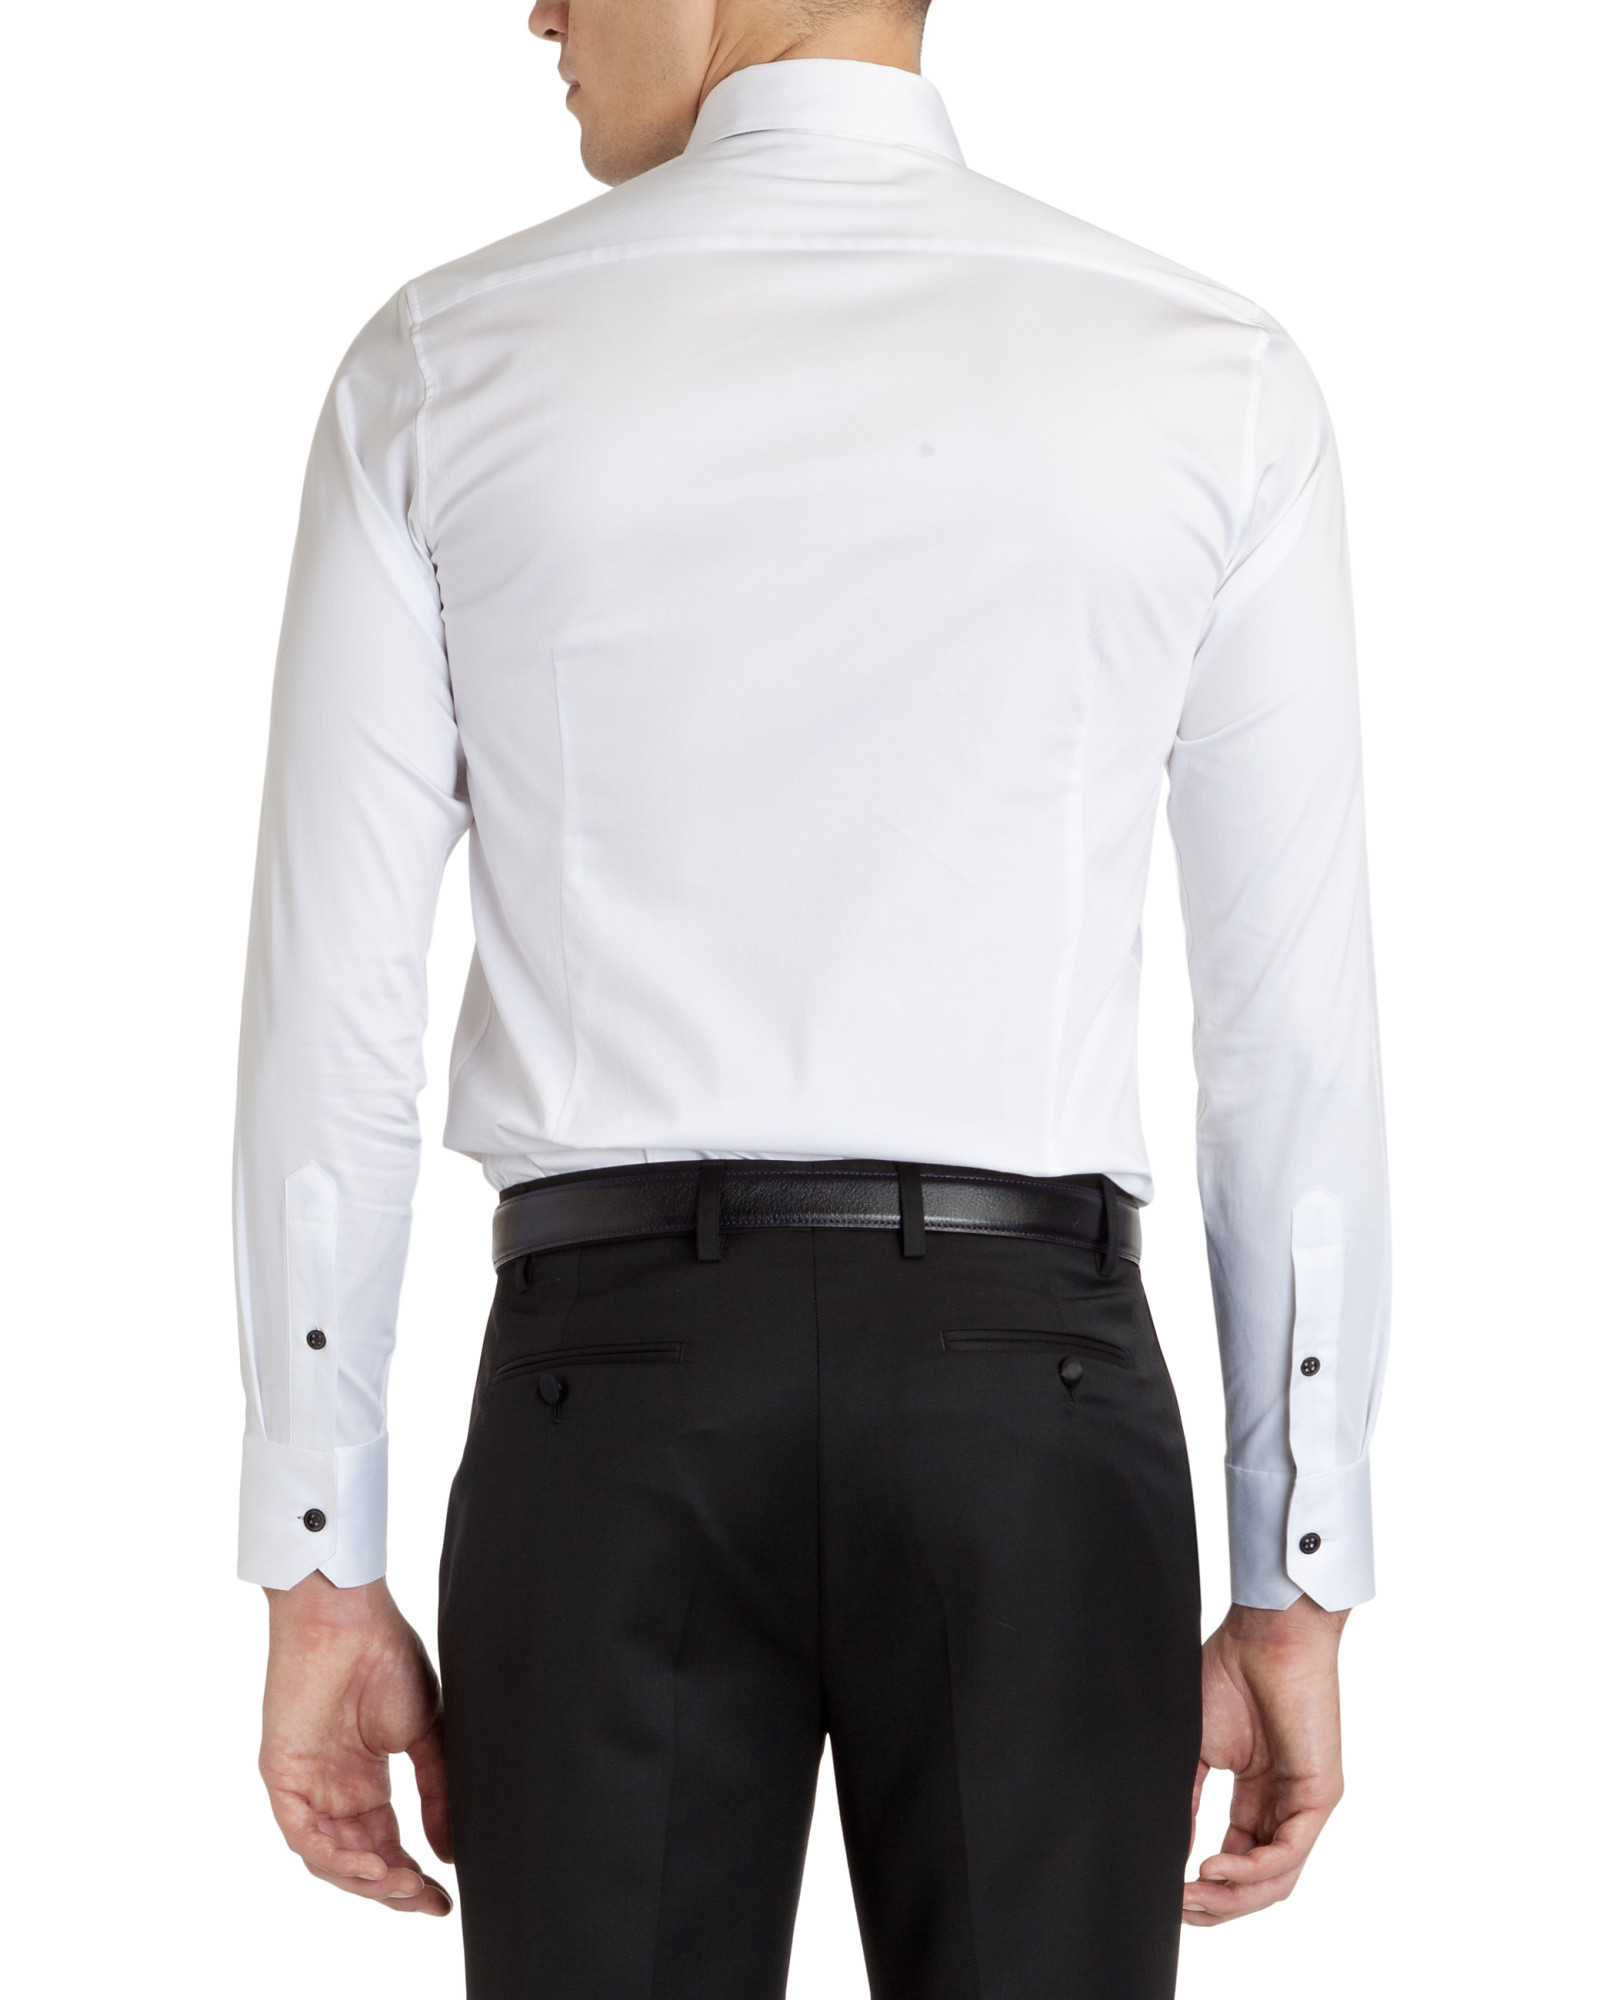 Ted Baker Cotton Formal Dinner Shirt in White for Men - Lyst